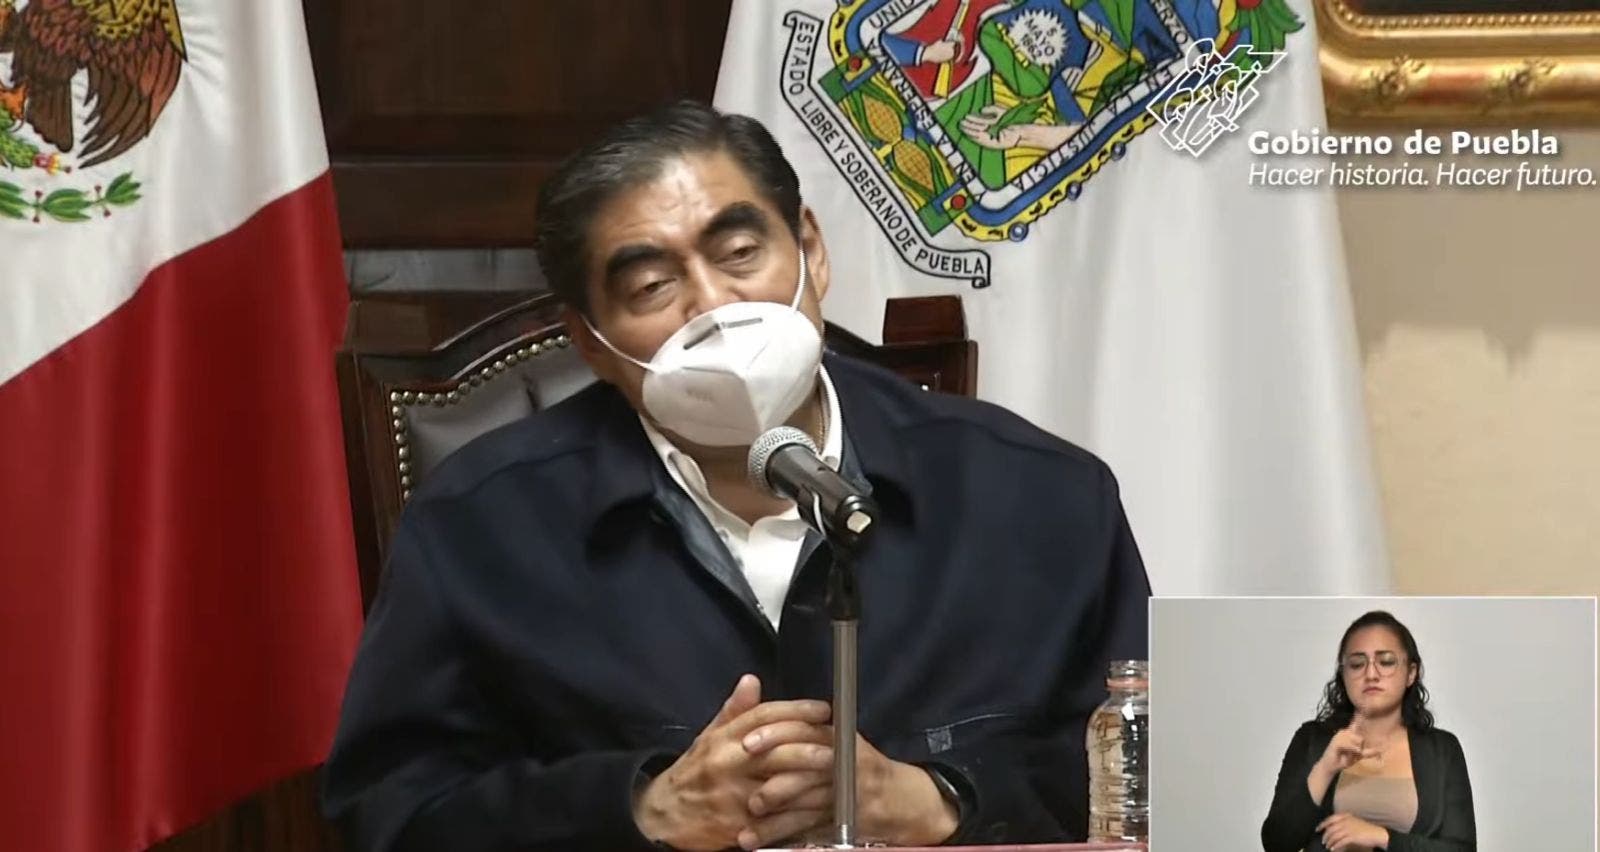 #AlMinuto “Ya está pasando “ dice Barbosa que ya hay repunte de contagios COVID en Puebla